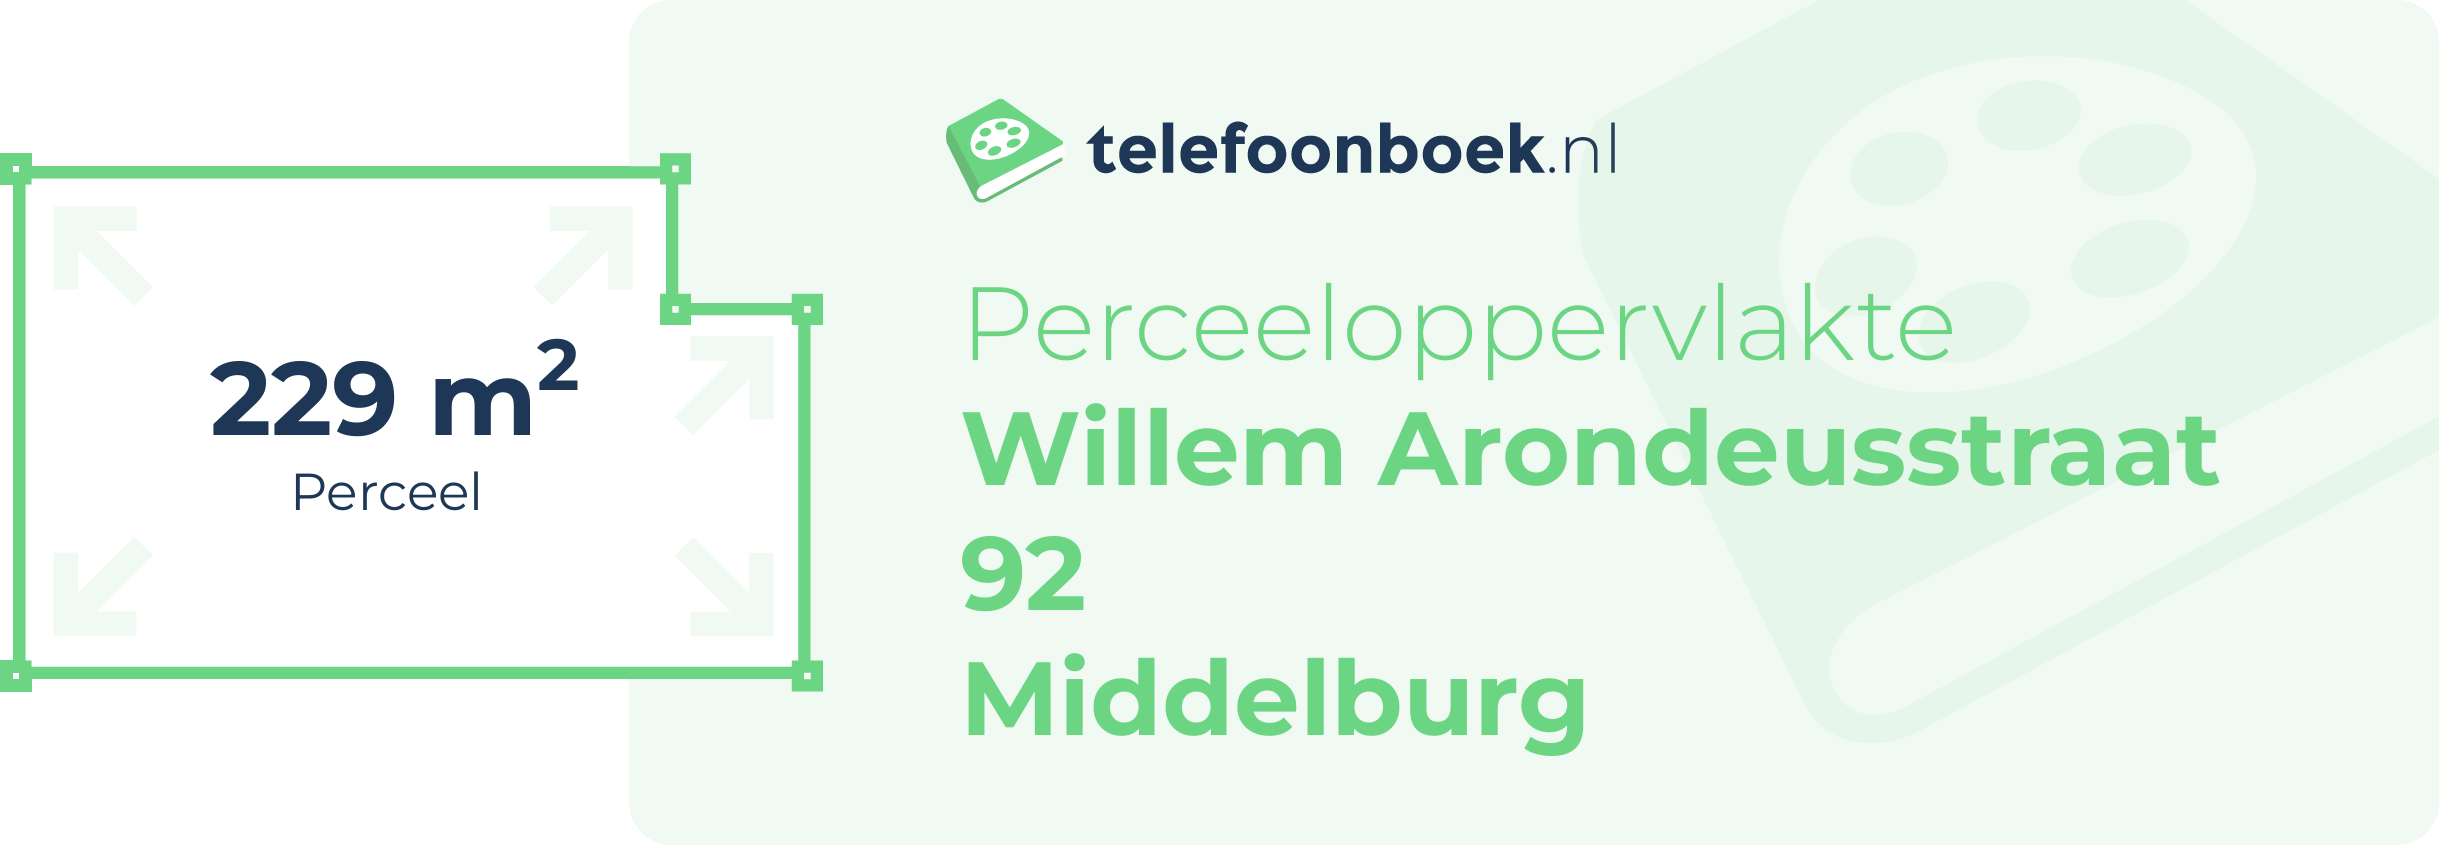 Perceeloppervlakte Willem Arondeusstraat 92 Middelburg